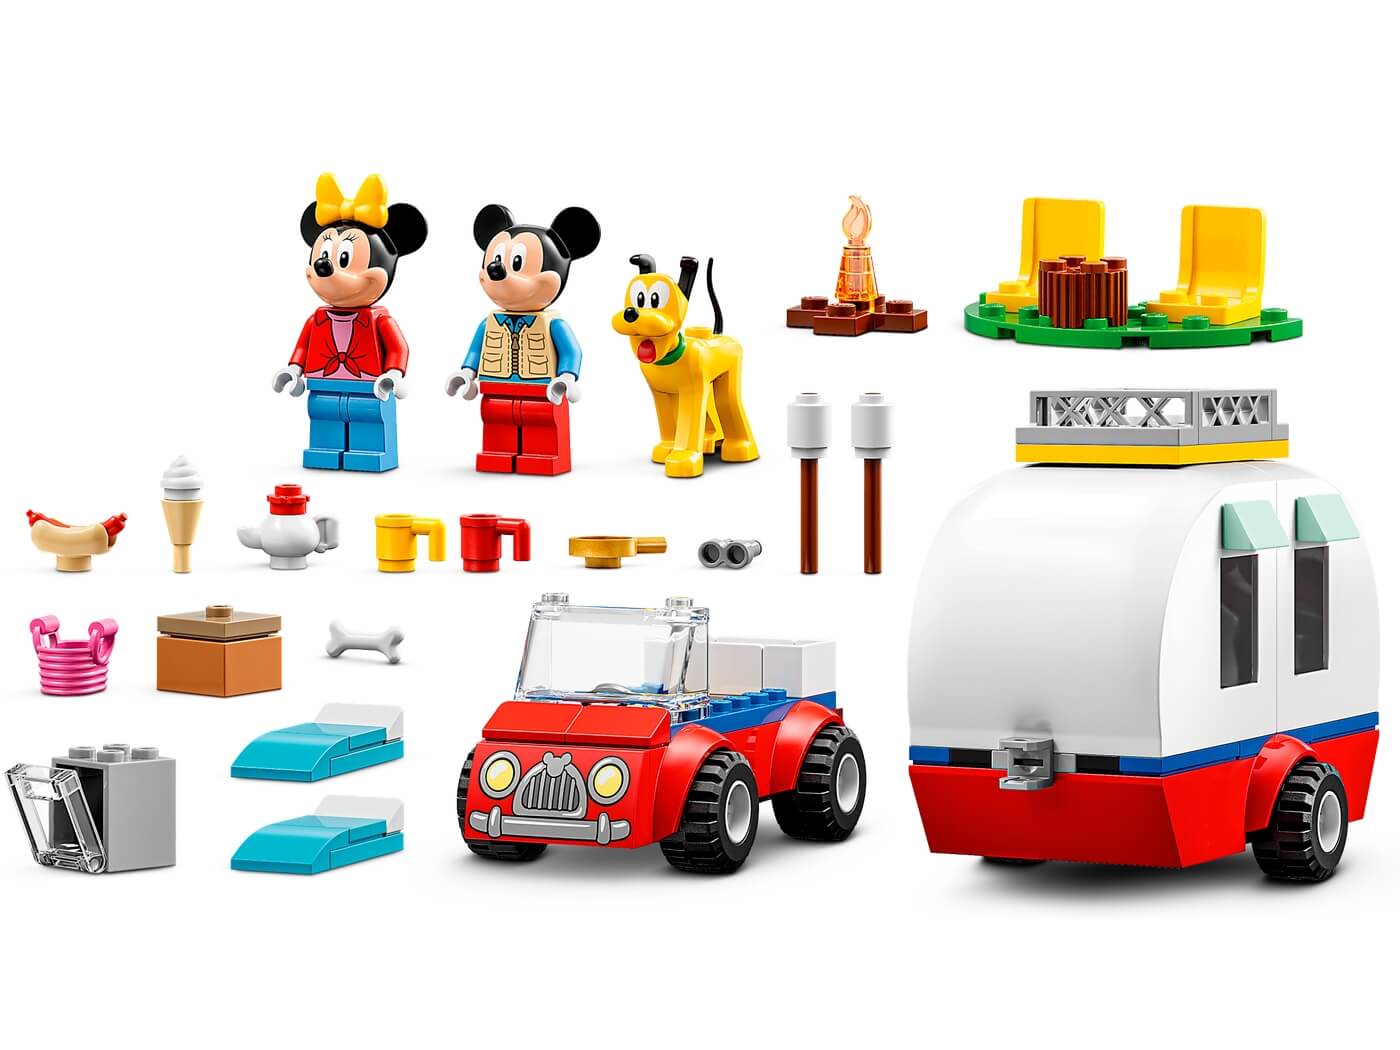 Excursion de Campo de Mickey Mouse y Minnie ( Lego 10777 ) imagen c